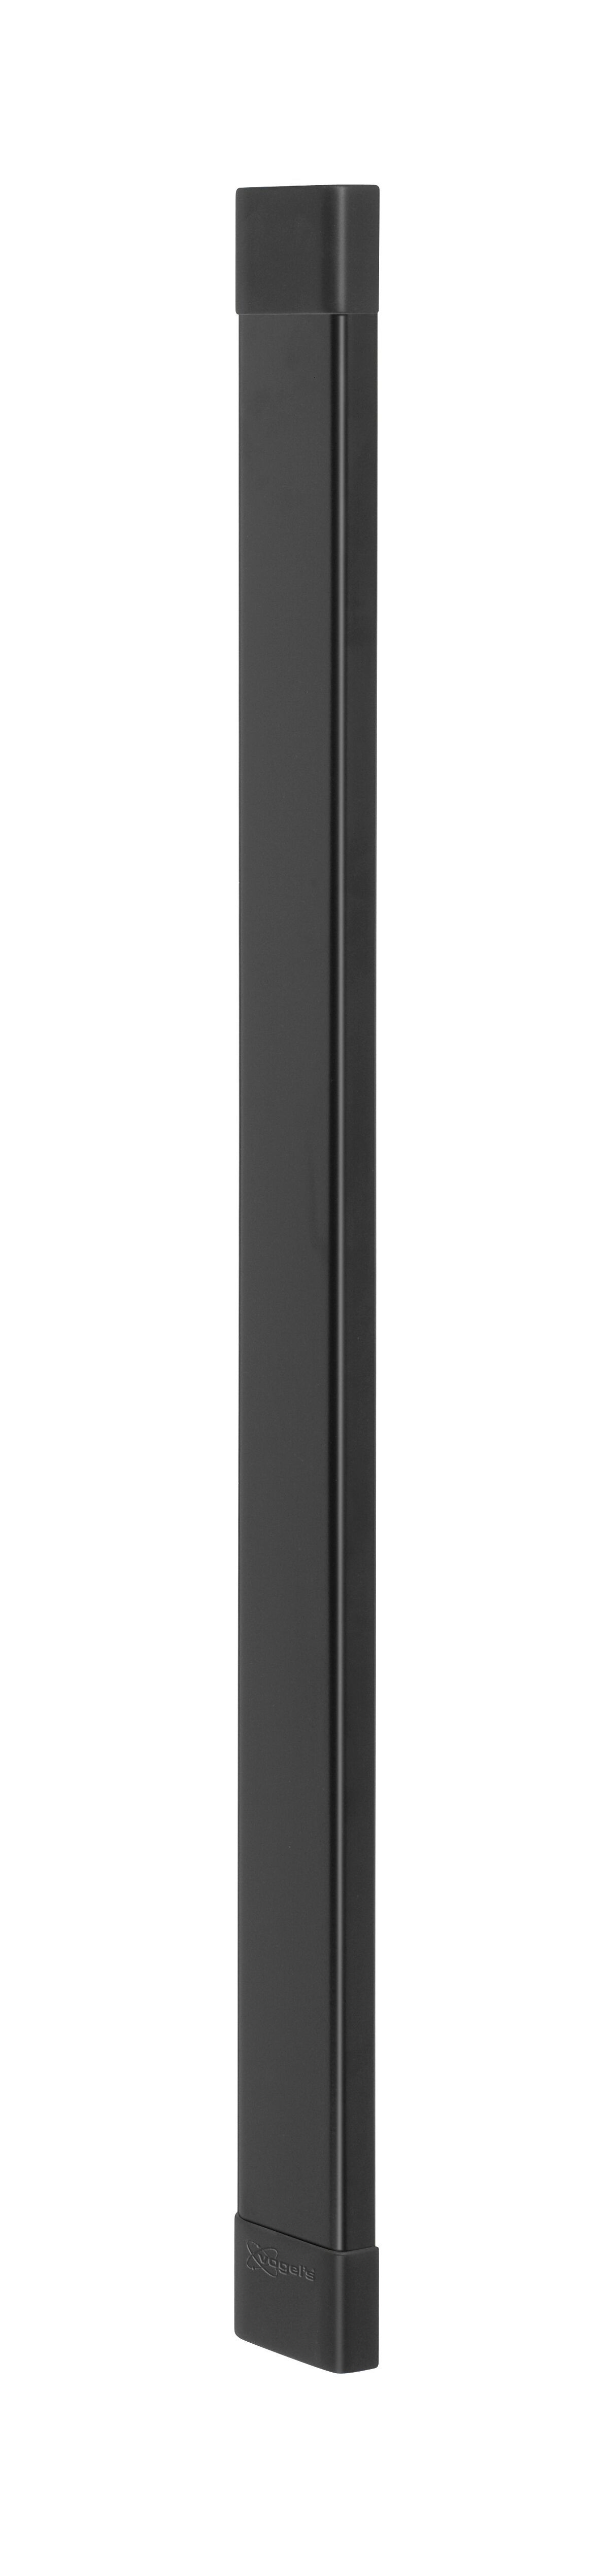 Vogel's CABLE 8 Canalización para cables (negro) - Número máx. de cables a sostener: Hasta 8 cables - Longitud: 94 cm - Product